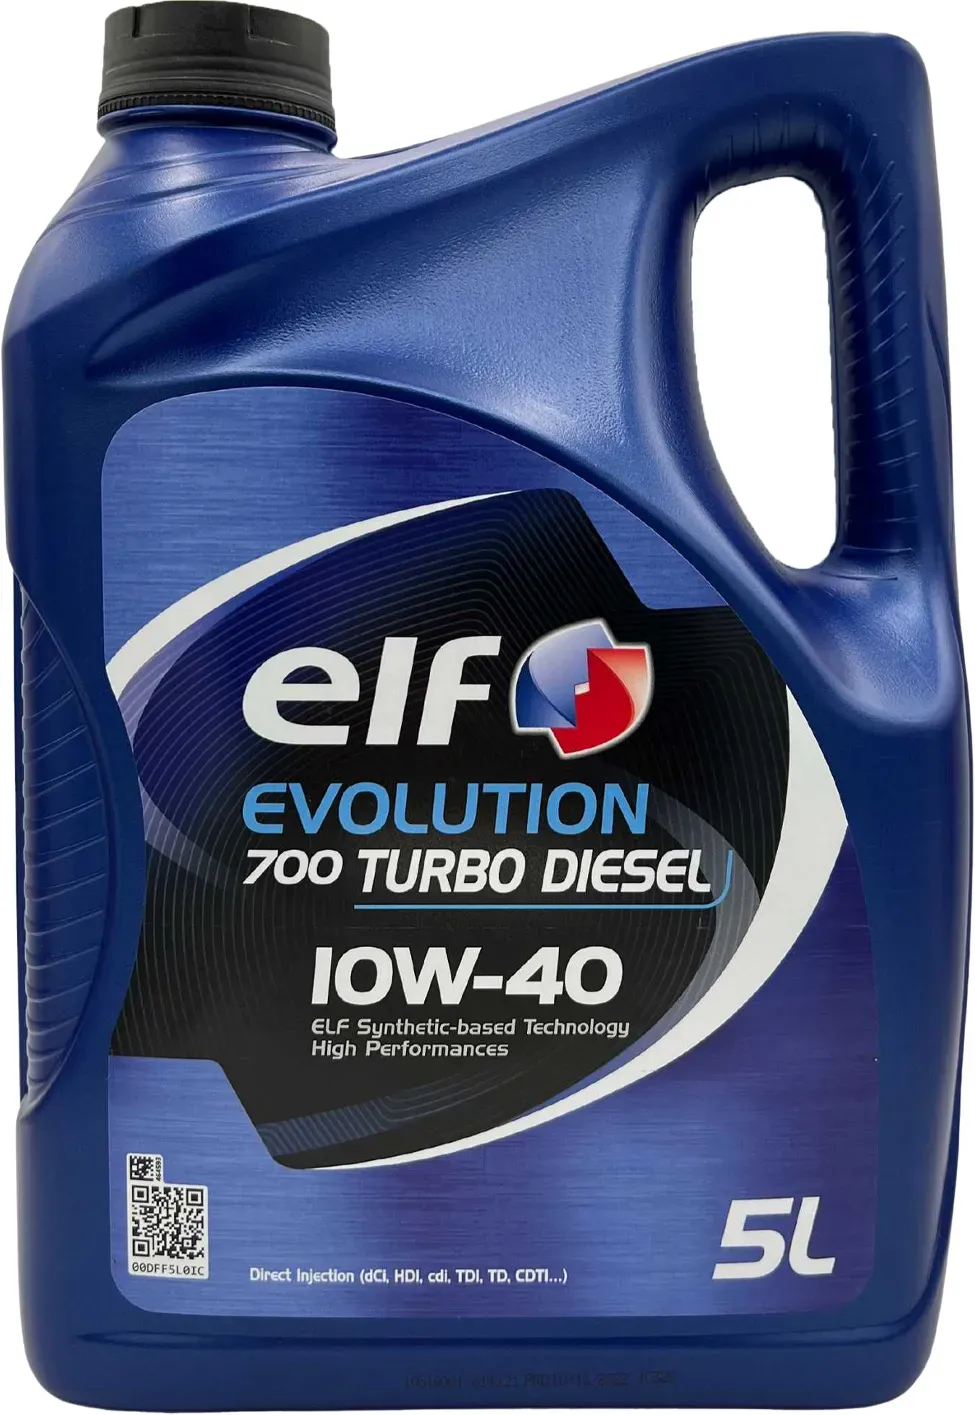 Elf Evolution 700 Turbo Diesel 10W-40 5 Liter